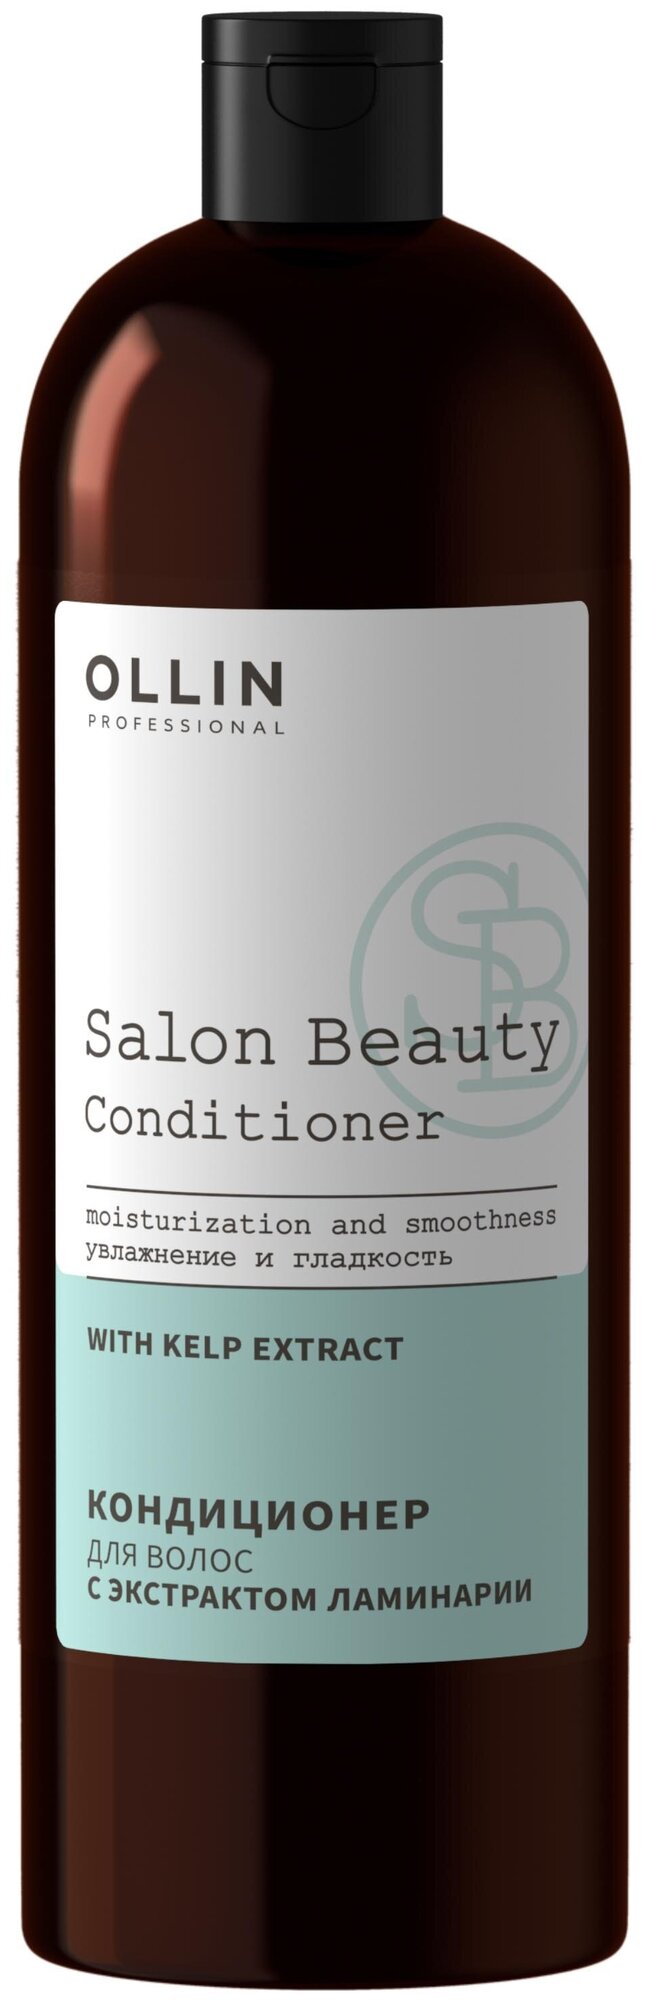 Кондиционер для волос с экстрактом ламинарии / SALON BEAUTY 1000мл